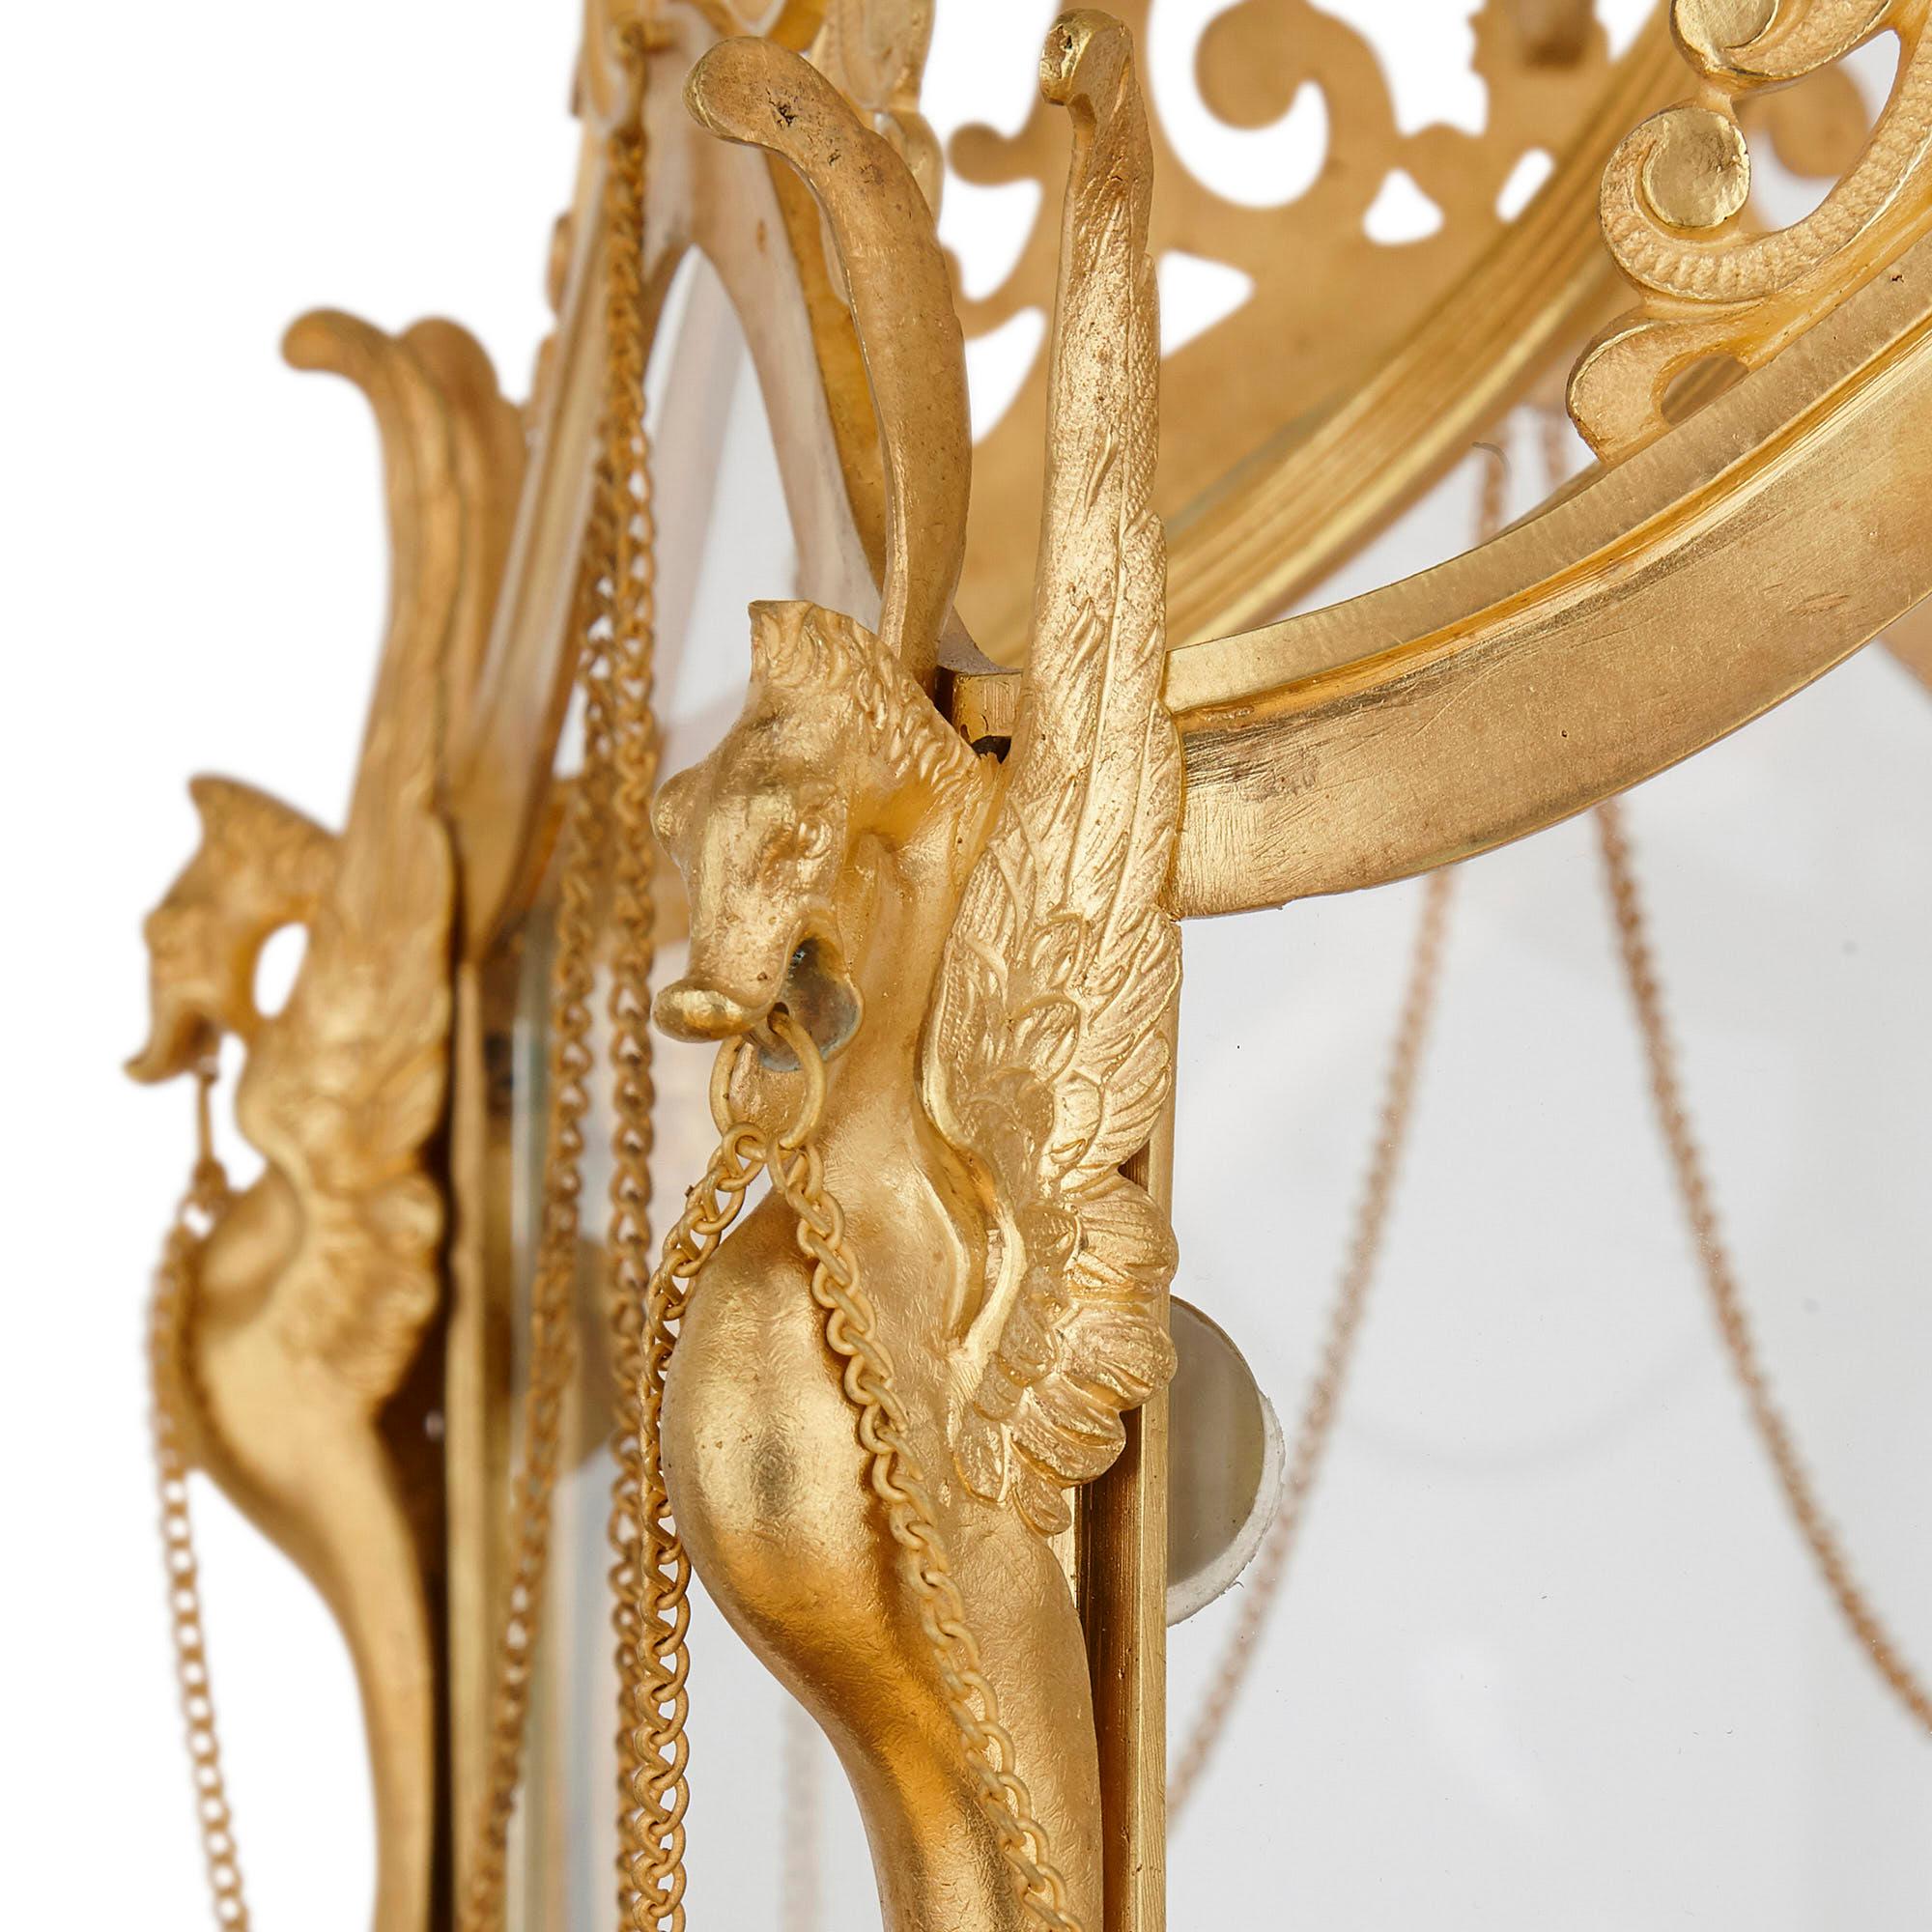 Lanterne ancienne de style baroque en verre et bronze doré
Français, 19e siècle
Dimensions : Hauteur 82cm, diamètre 44cm

Conçue dans le style baroque orné, cette magnifique lanterne est fabriquée en bronze doré et en verre. Il comporte cinq